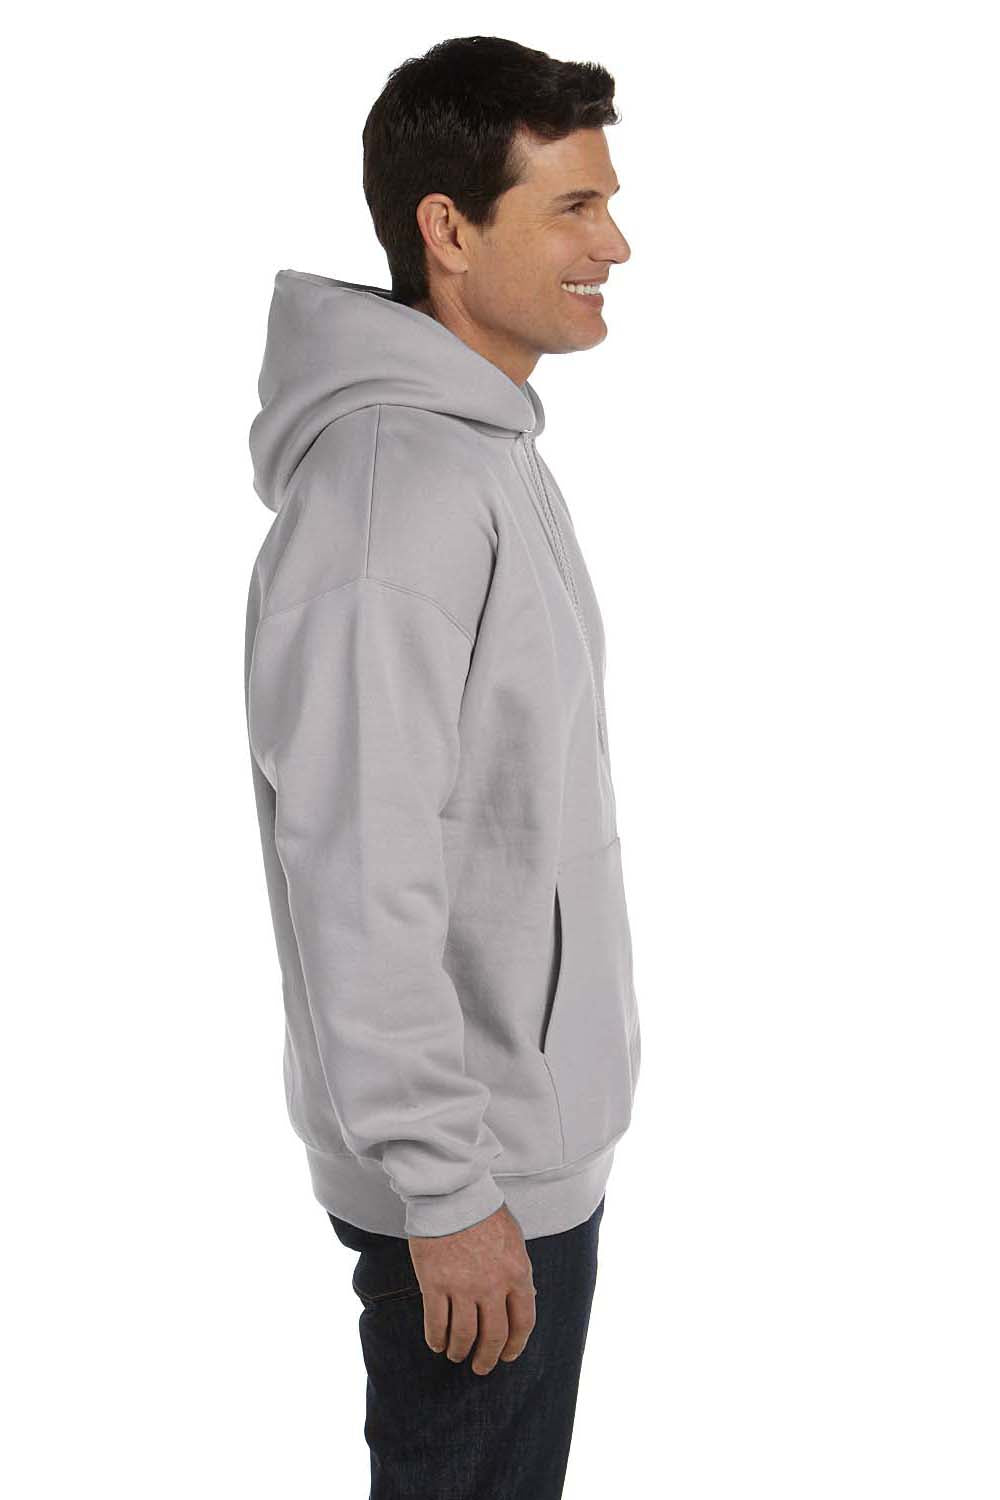 Hanes F170 Mens Ultimate Cotton PrintPro XP Hooded Sweatshirt Hoodie Light Steel Grey Side